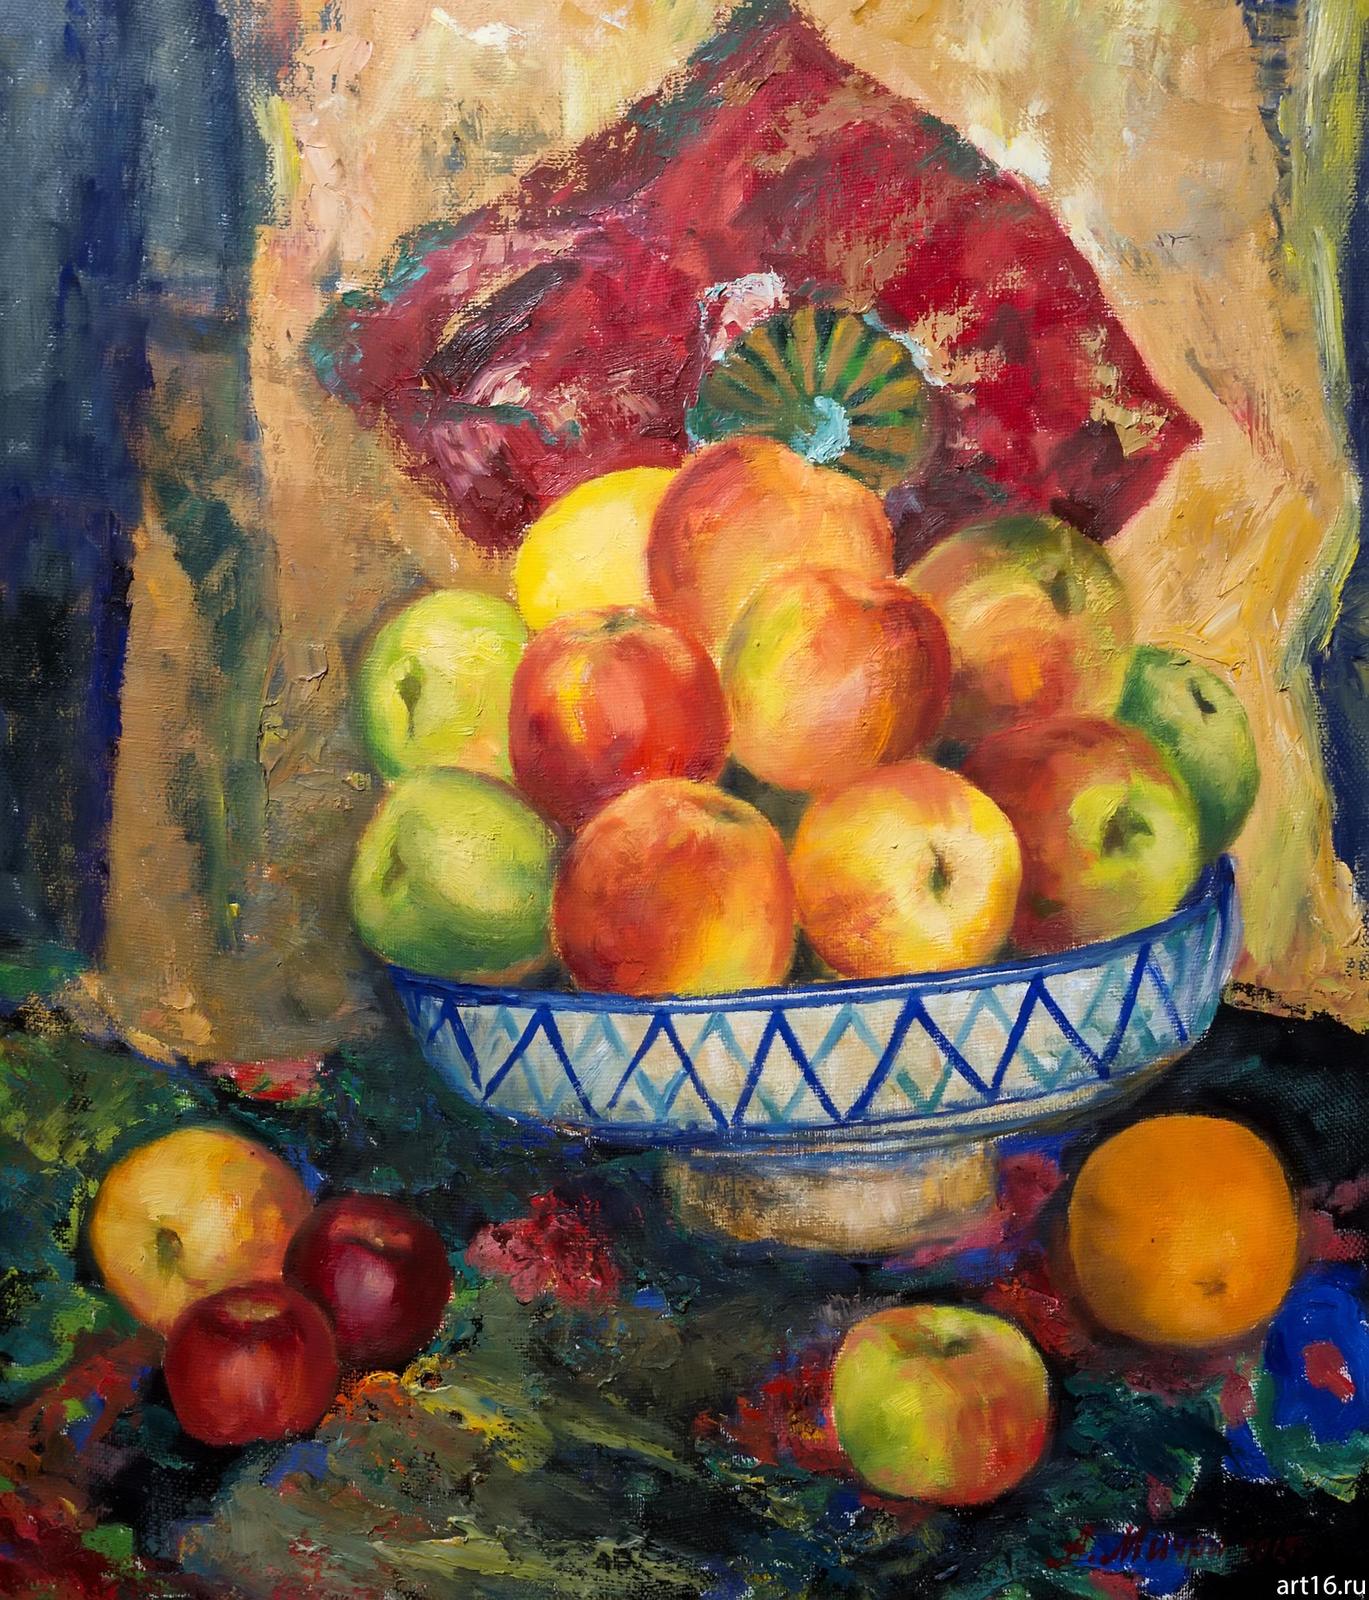 Фото №892954. Натюрморт с яблоками. Мичри А.И. 1934 